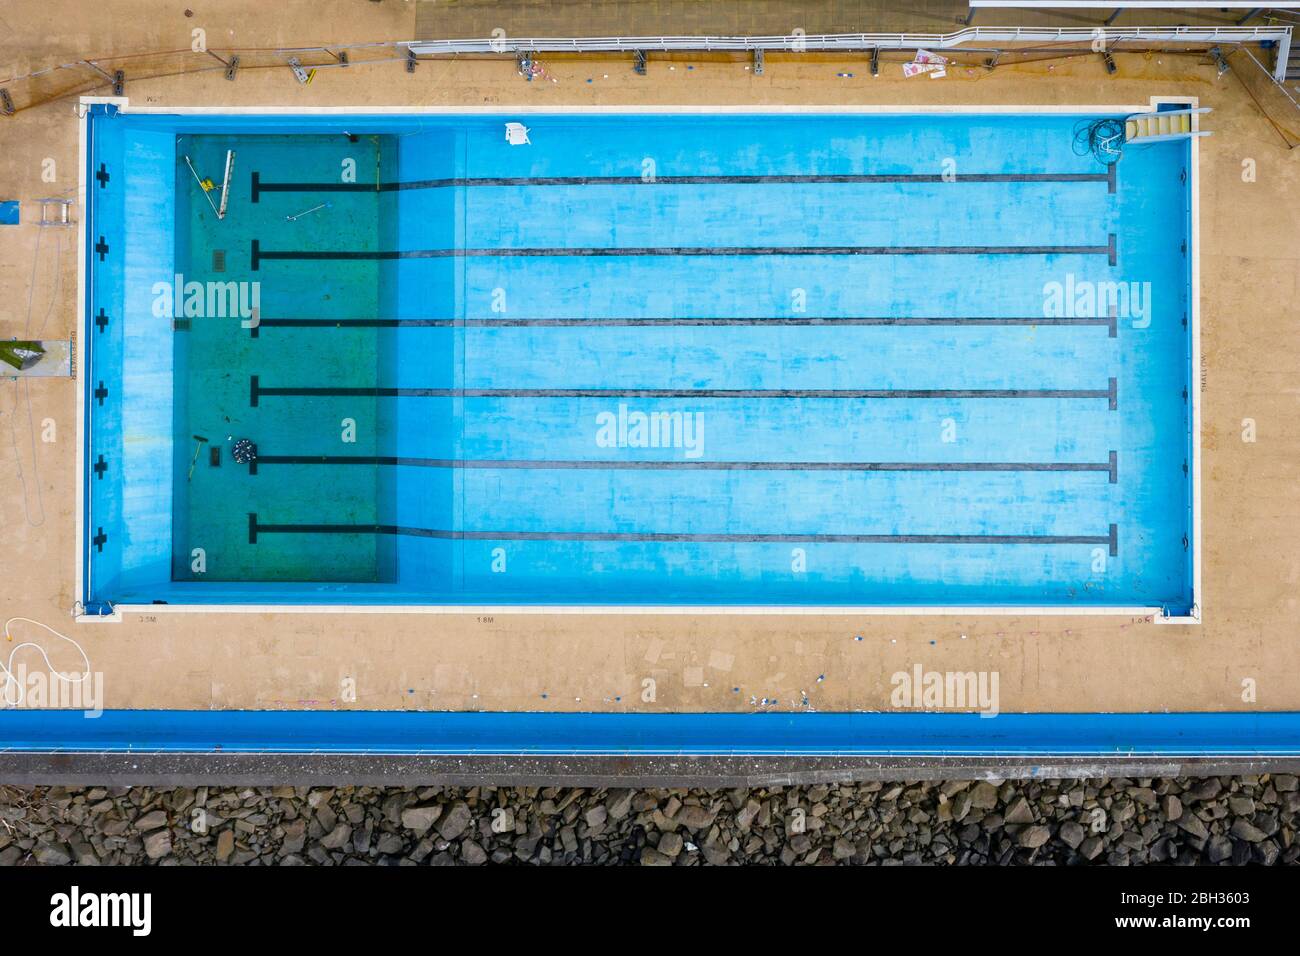 Gourock, Scozia, Regno Unito. 23 aprile 2020. Vista aerea della piscina all'aperto di Gourock. La piscina di acqua di mare normalmente è occupata ma ora è chiusa e l'acqua è stata scaricata durante il blocco del coronavirus. Iain Masterton/Alamy Live News Foto Stock